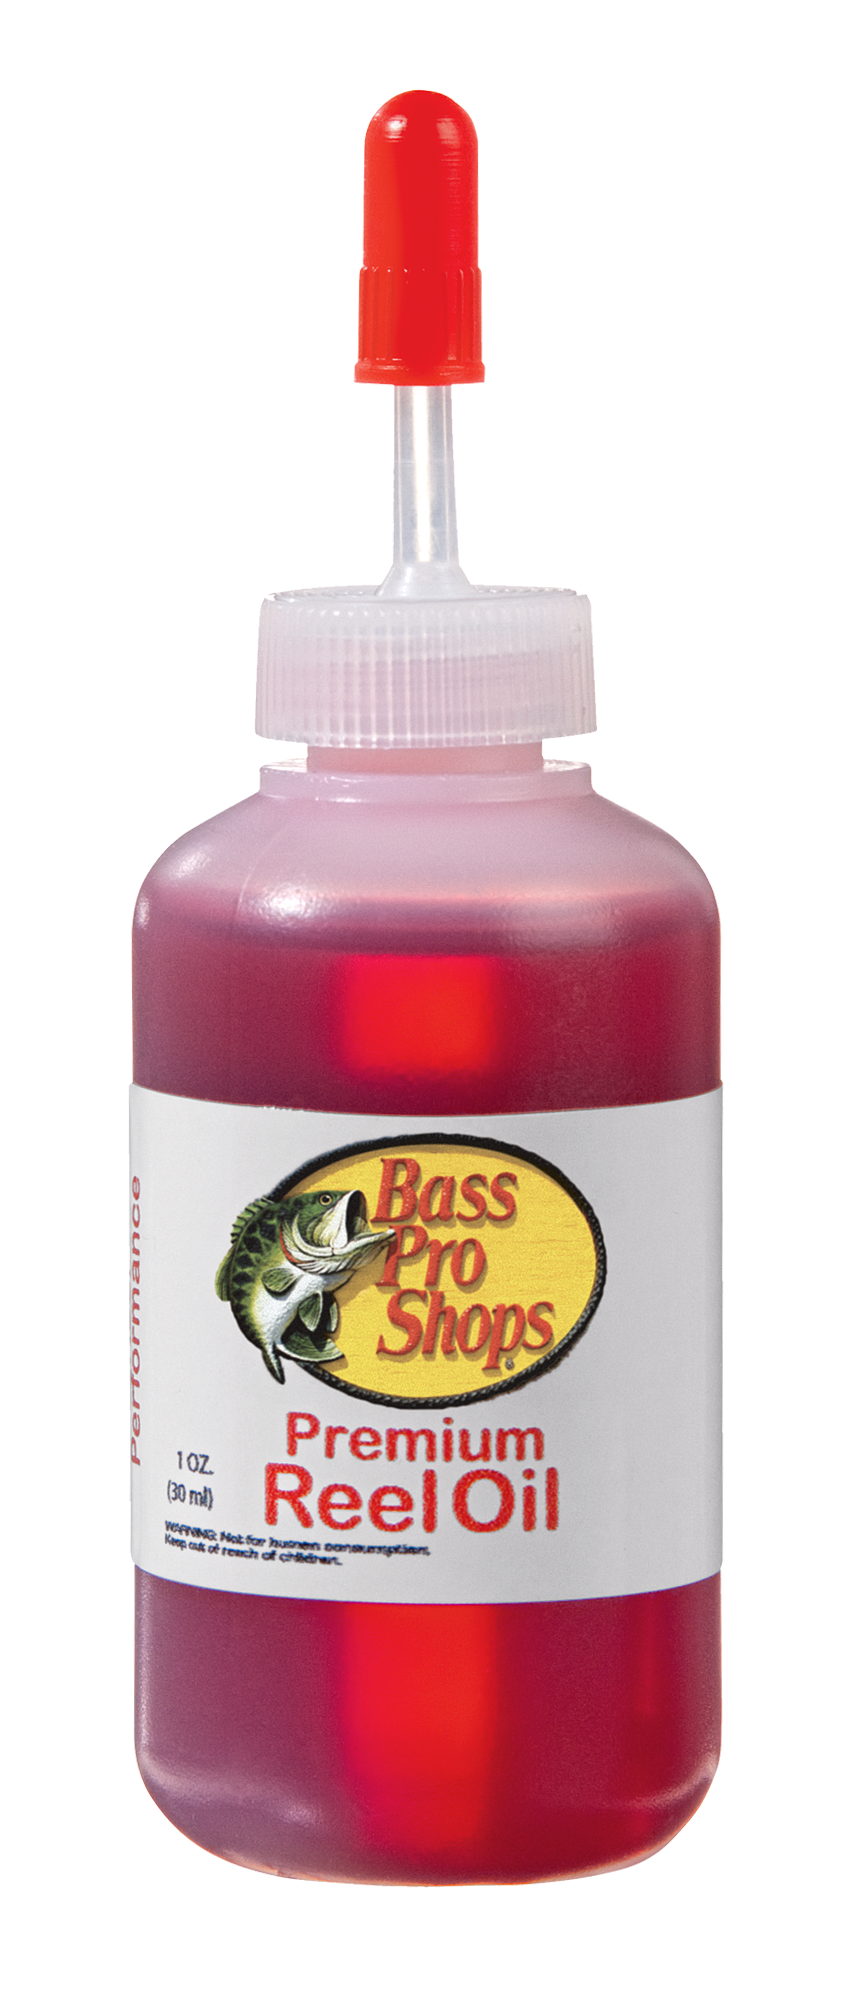 Bass Pro Shops Premium Reel Oil